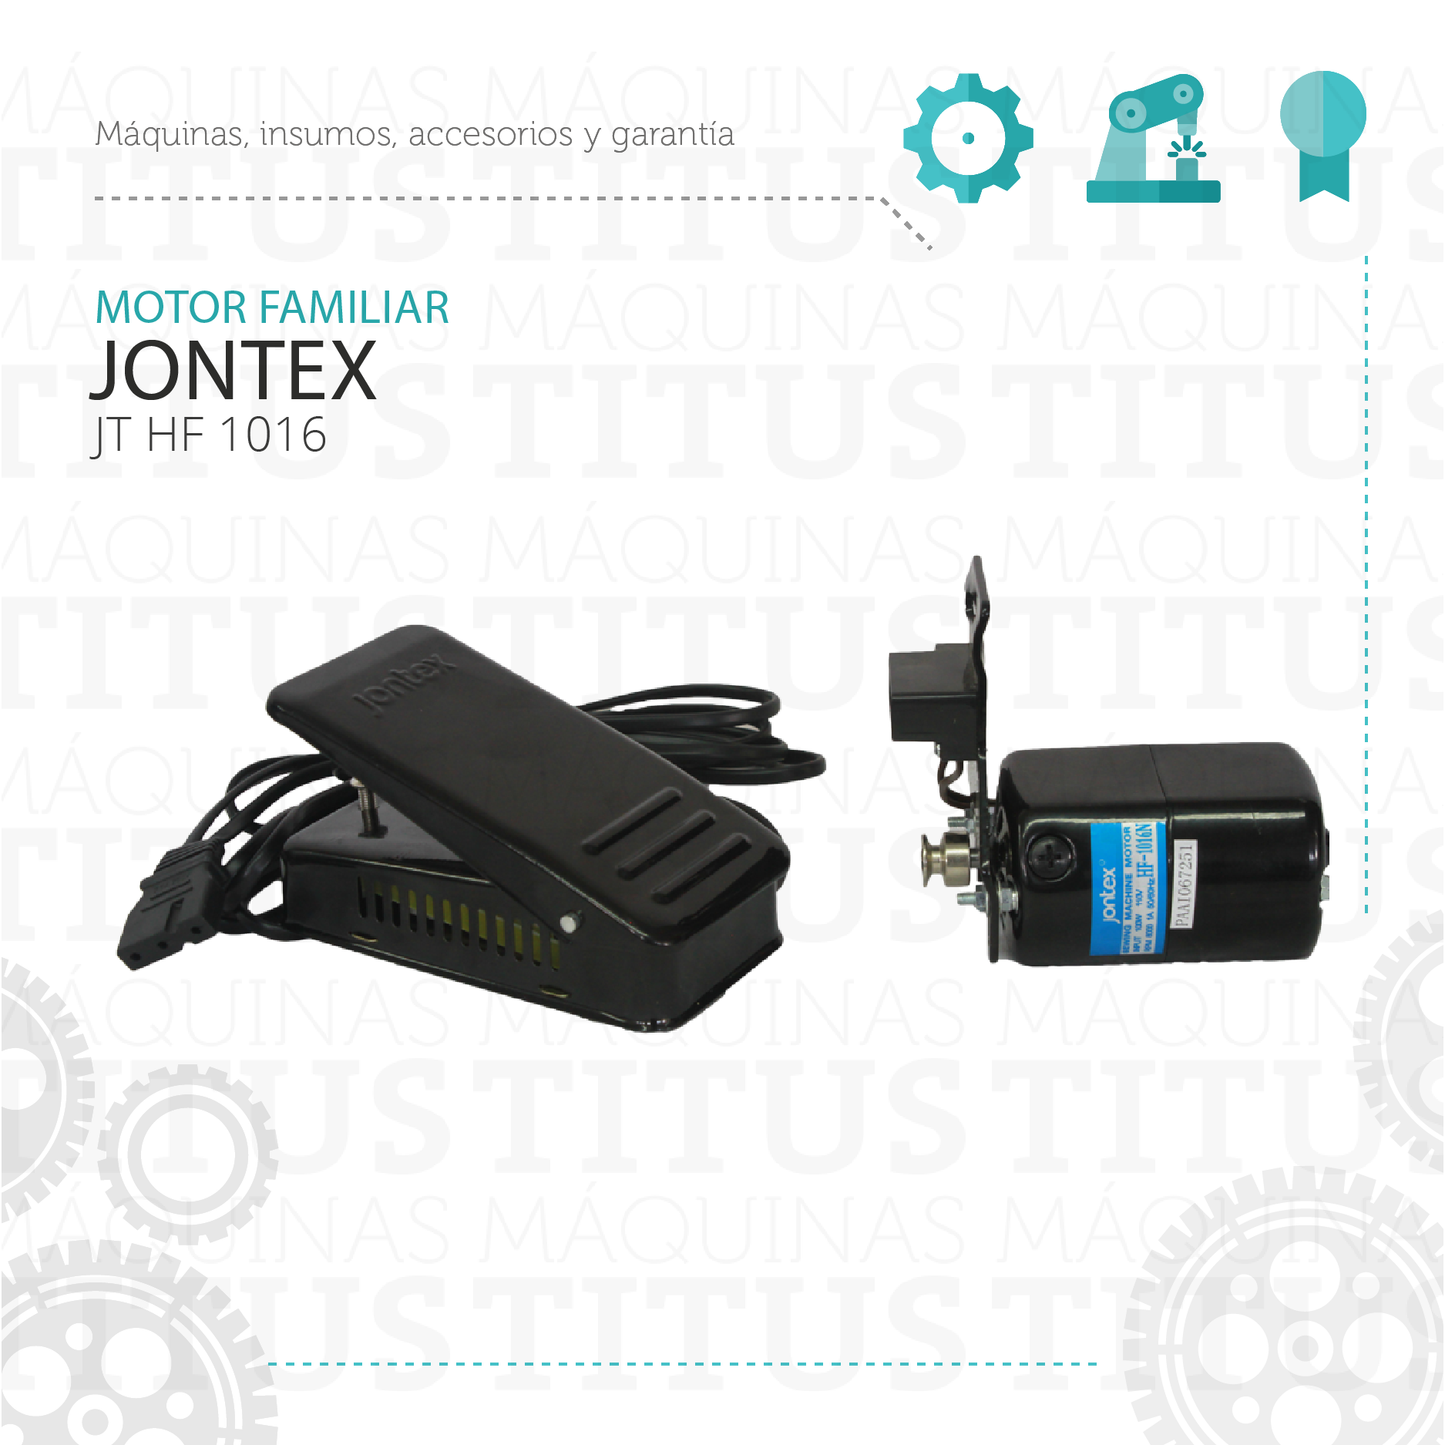 Motor Familiar Jontex JT HF 1016 Maquina De Coser - Commercio